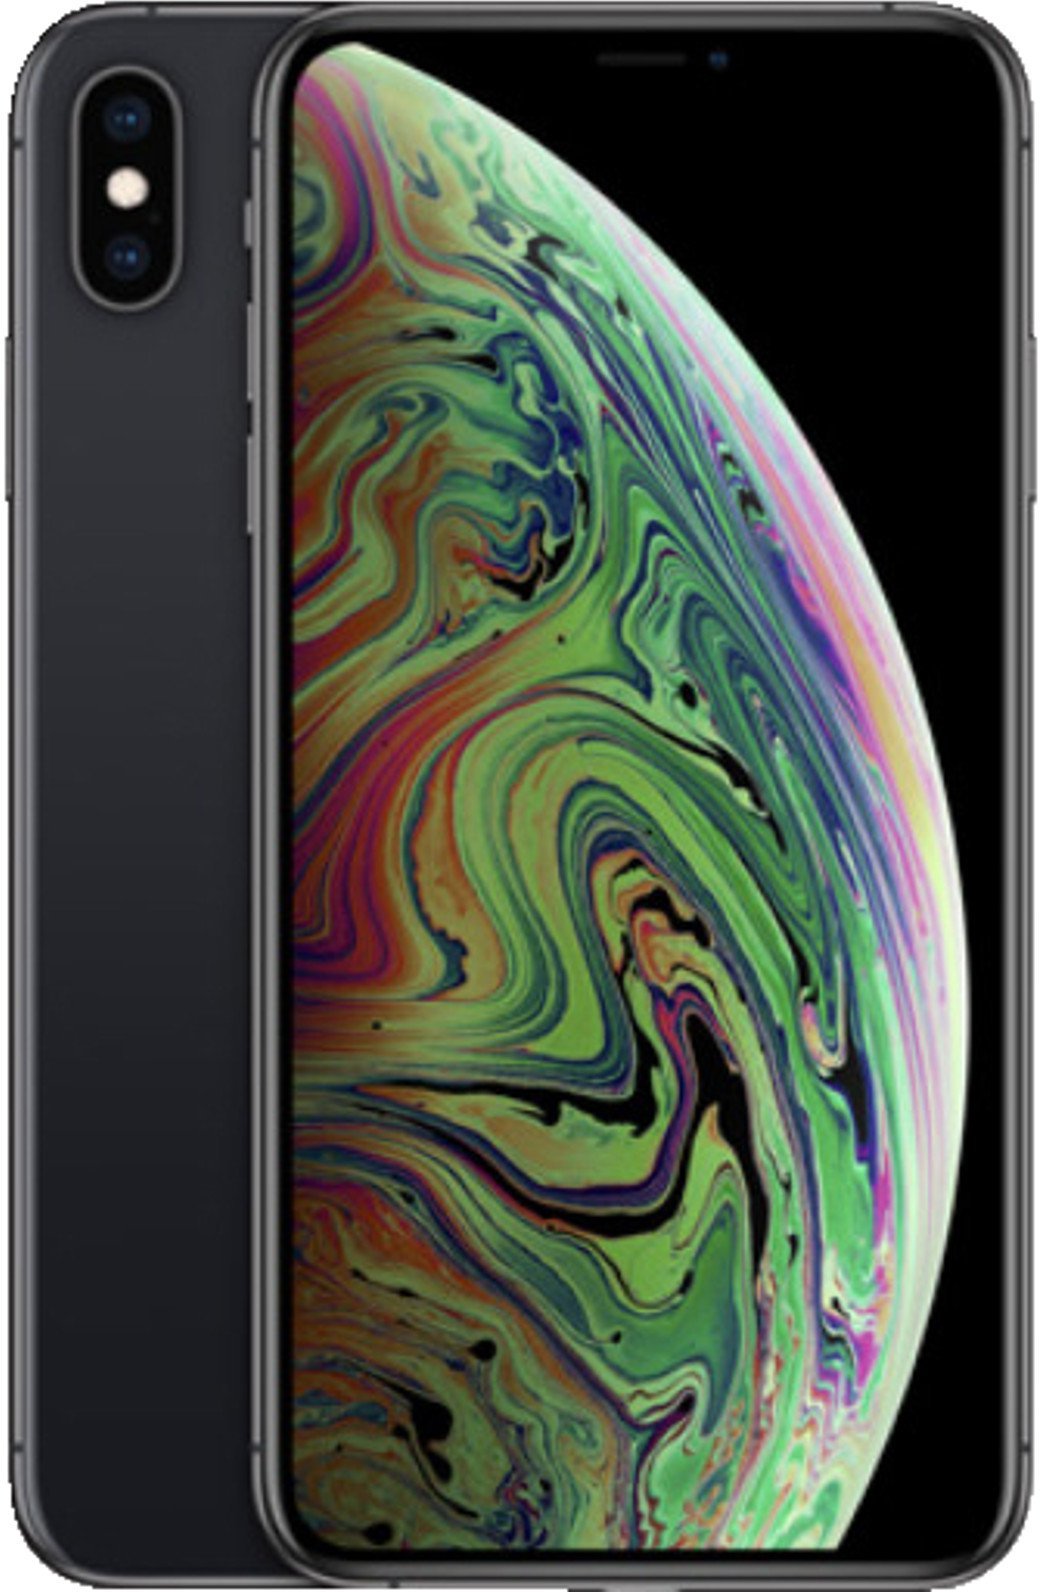 Apple Iphone 8 Plus 256gb Silber Ohne Vertrag Gunstig Kaufen